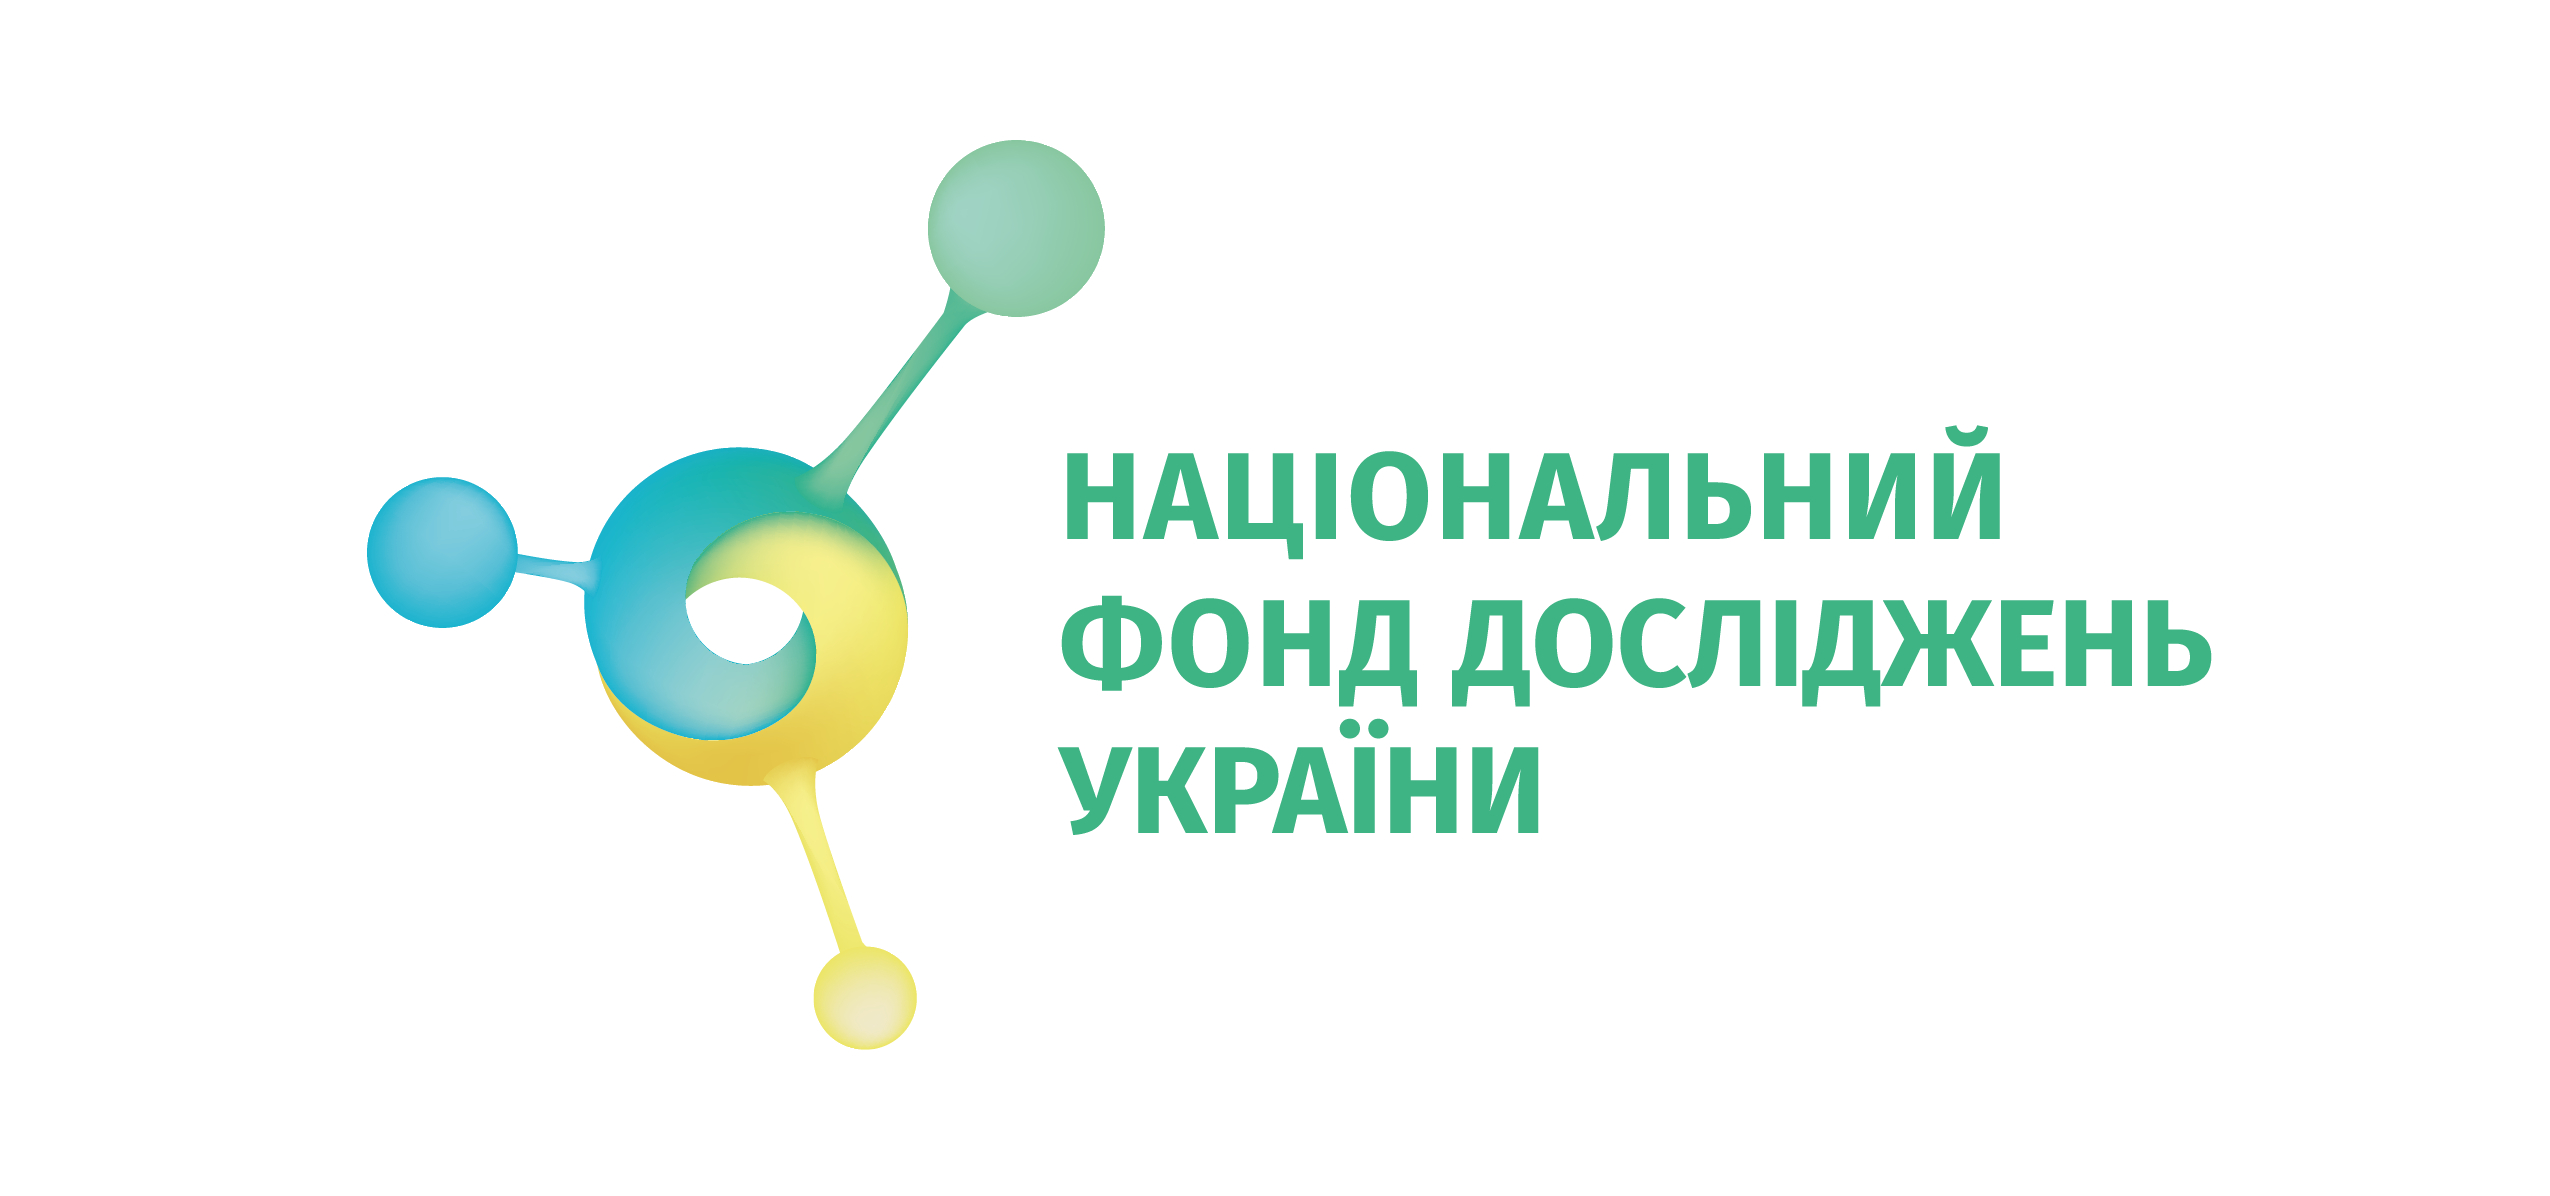 Національний фонд досліджень України оголосив конкурси для науковців